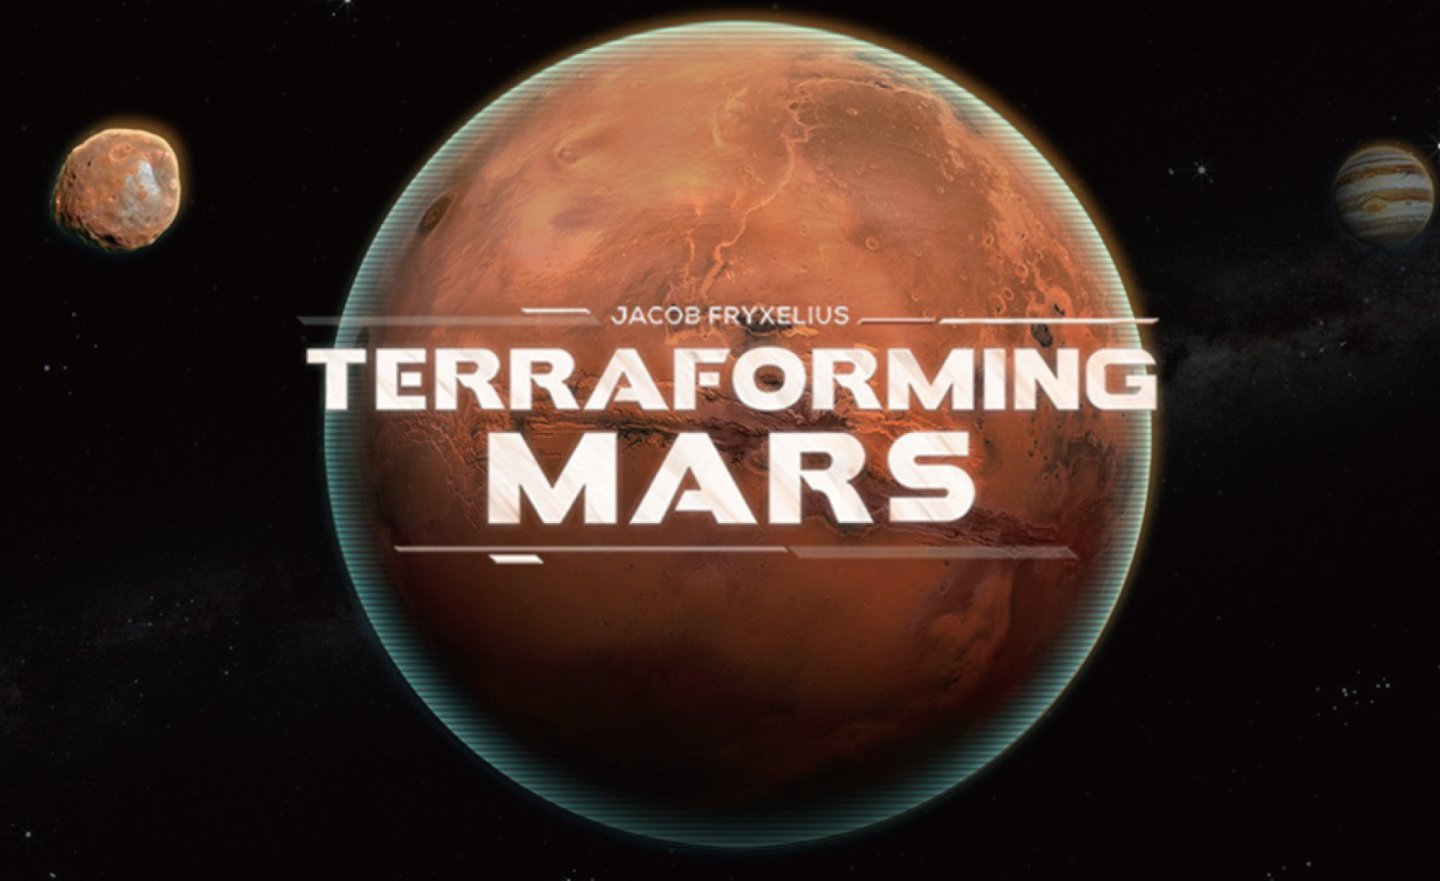 【限時免費】回合制戰略遊戲《Terraforming Mars》放送中，2022 年 5 月 12 日 23:00 前領取